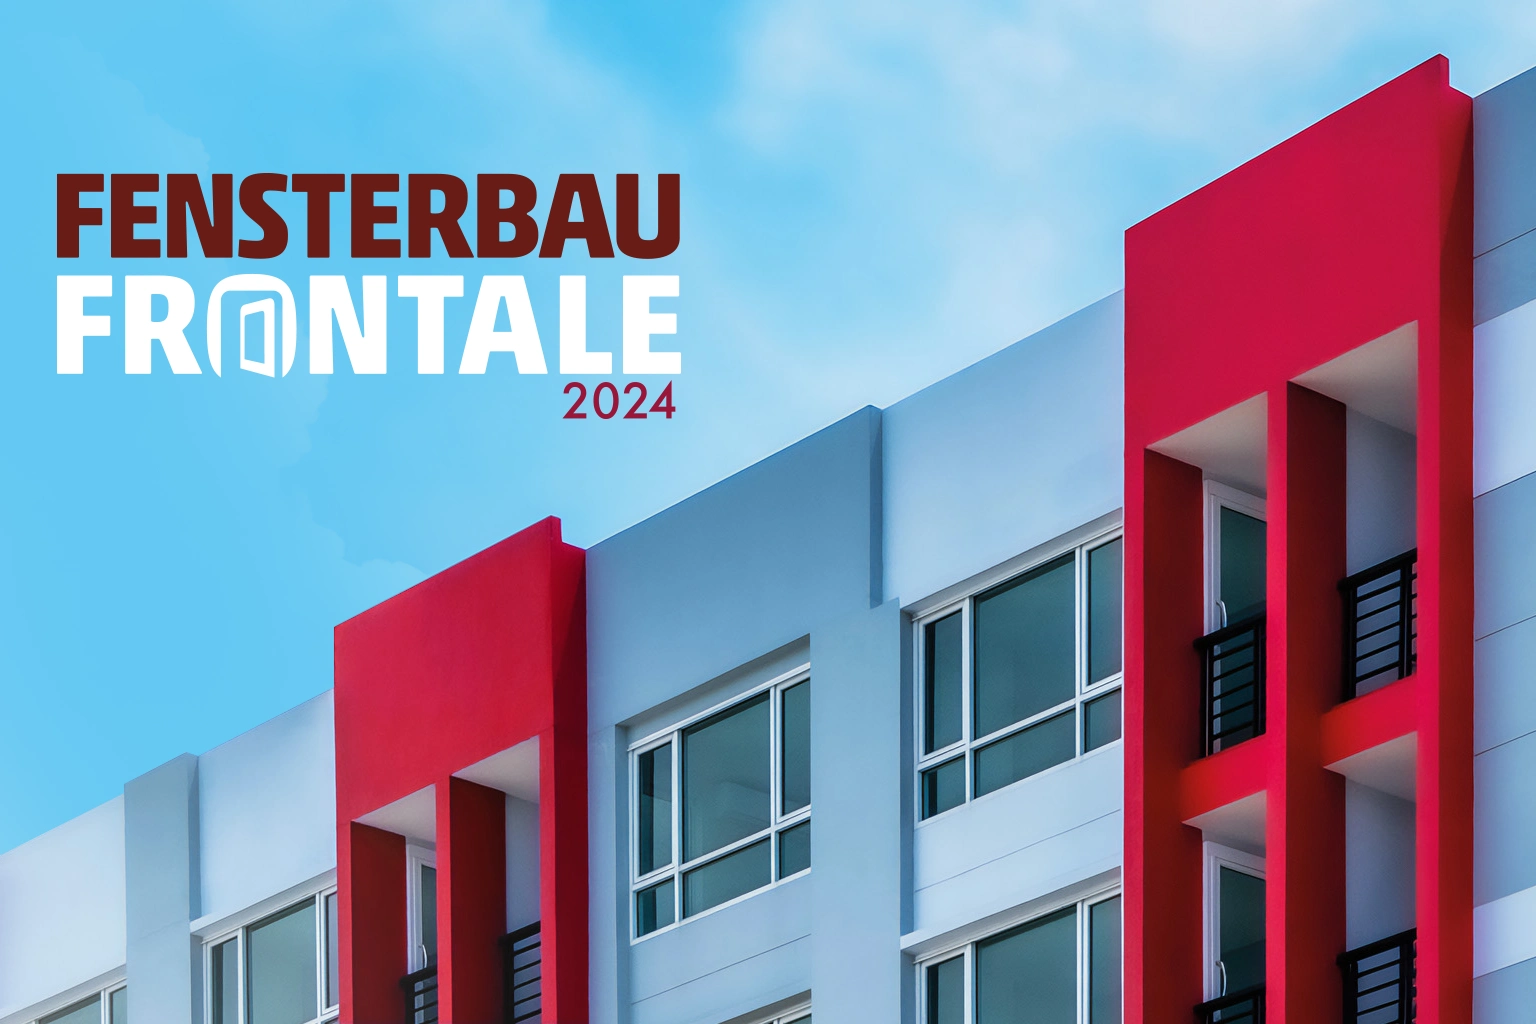 Guten Tag! Wir besuchen die FENSTERBAU FRONTALE 2024 in Nürnberg!